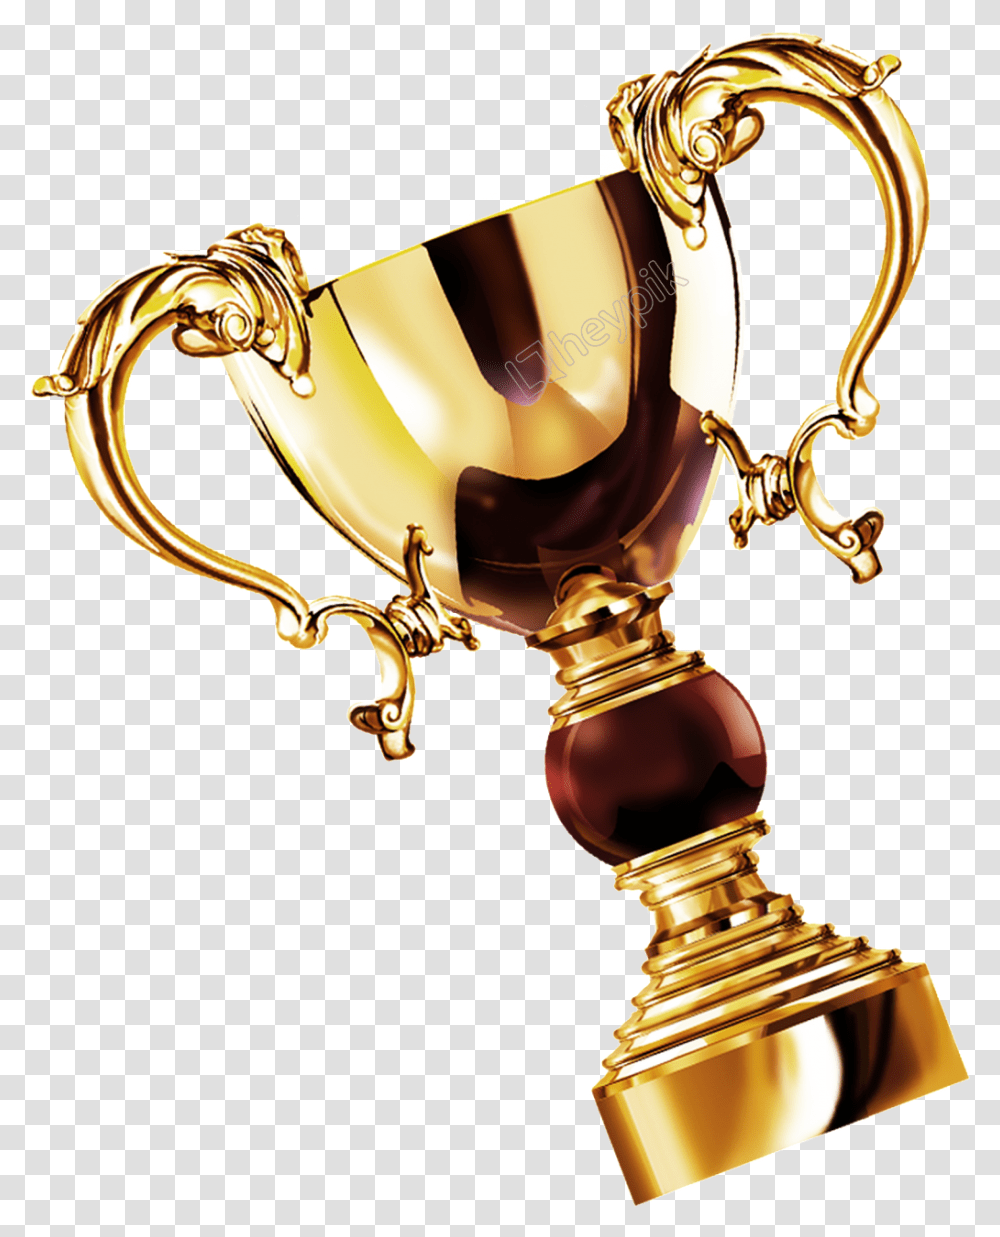 Download Gold Trophy Gold Trophy, Sink Faucet Transparent Png